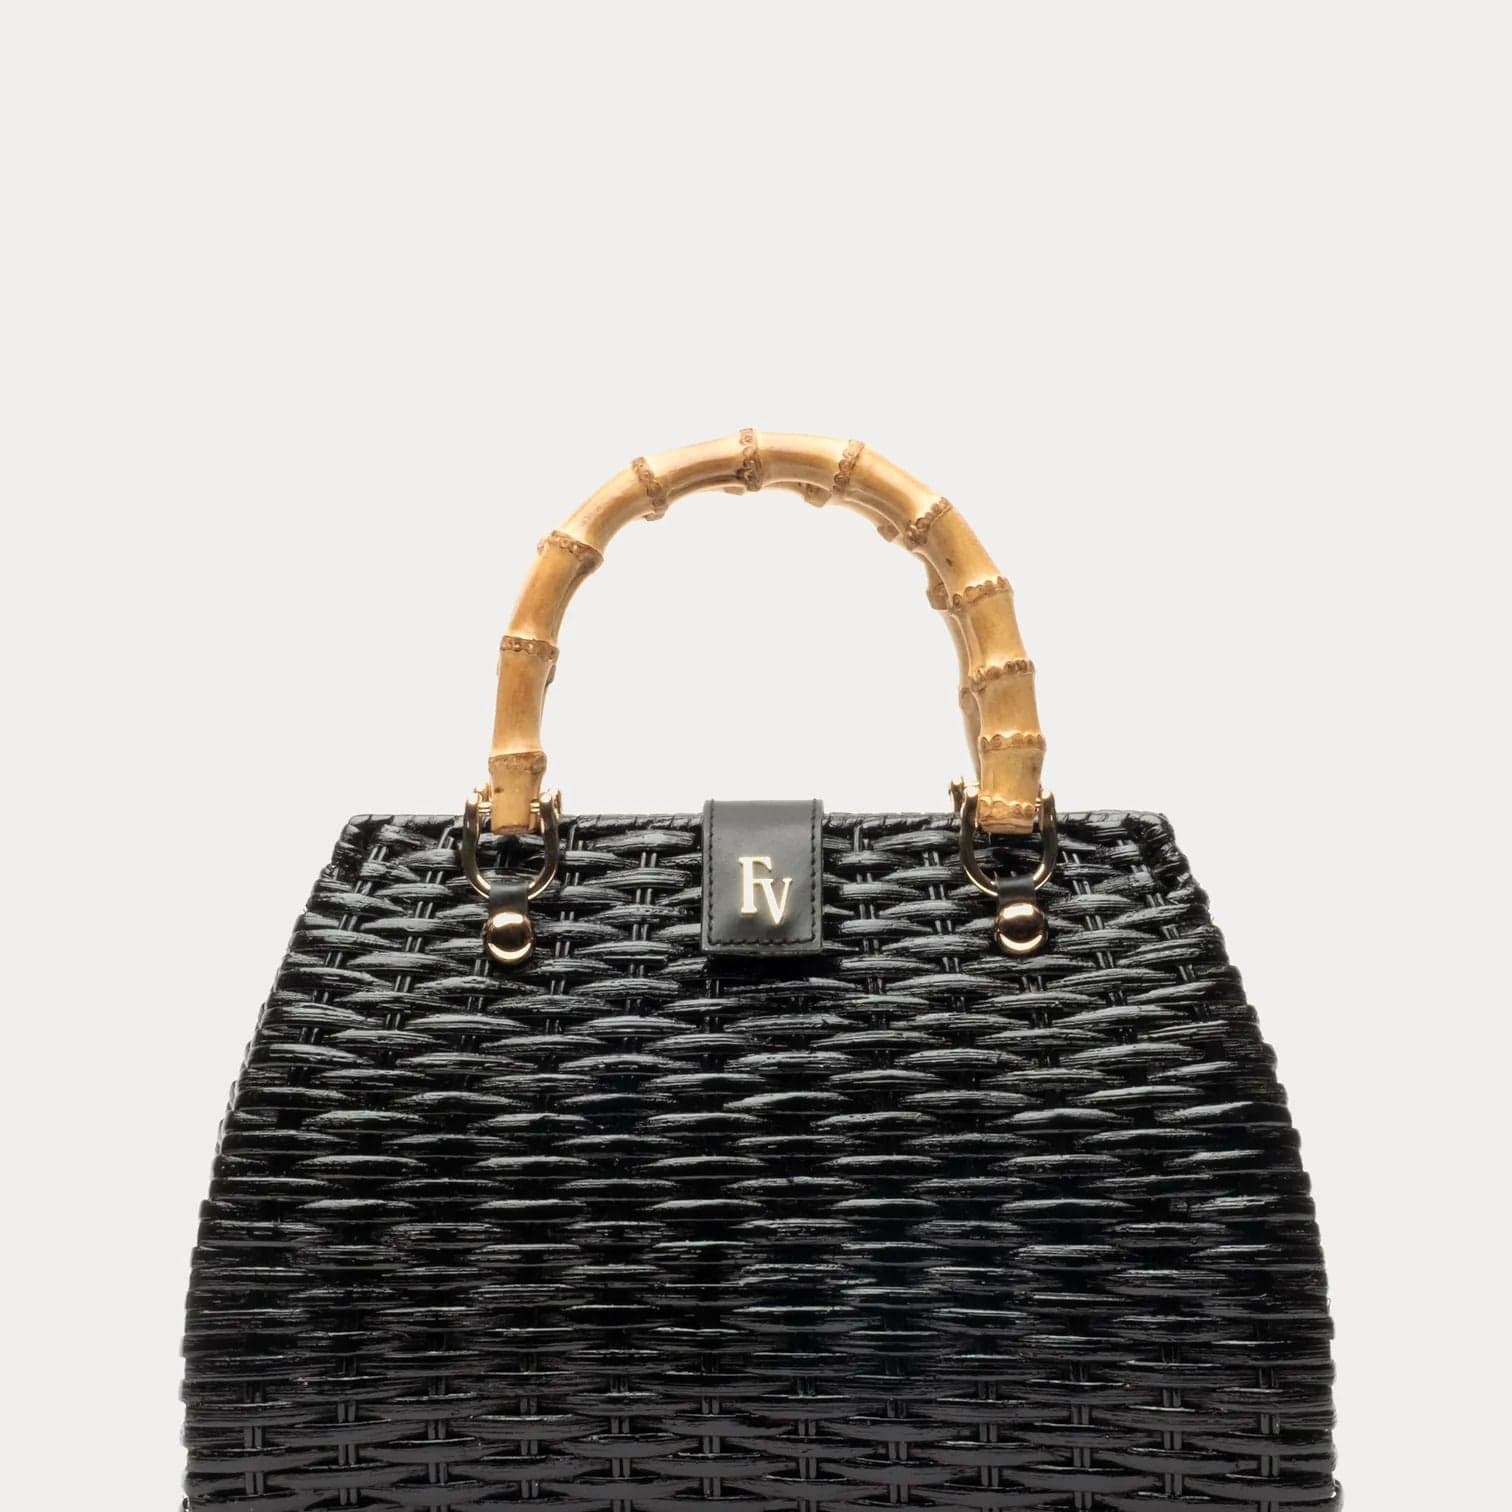 Frances Valentine Handbags Black Frances Valentine Rooster Basket Handbag